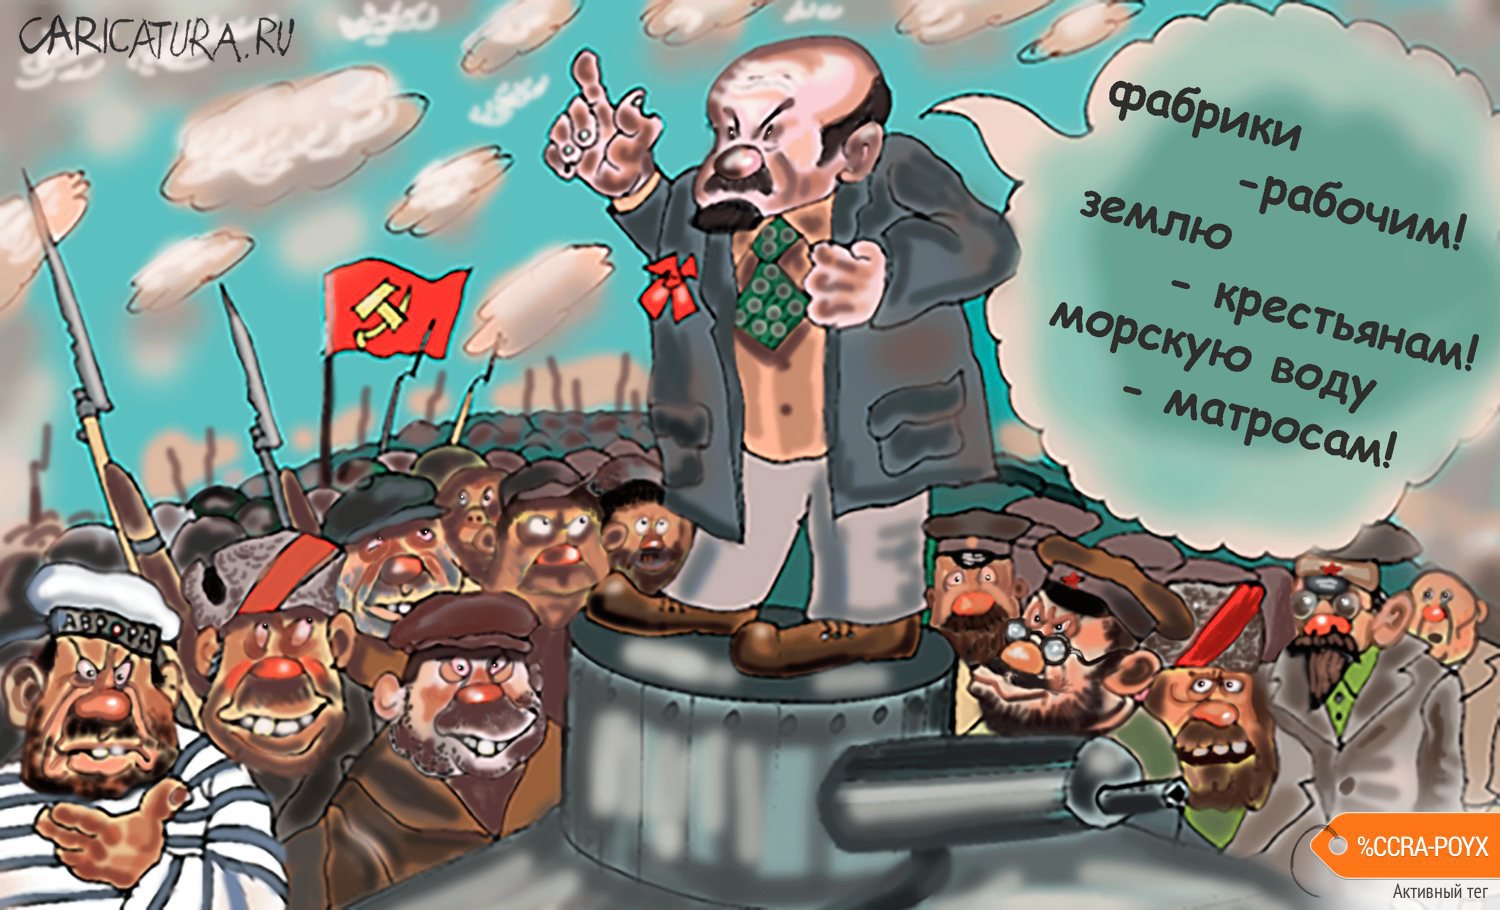 Карикатура "Обещания", Булат Ирсаев